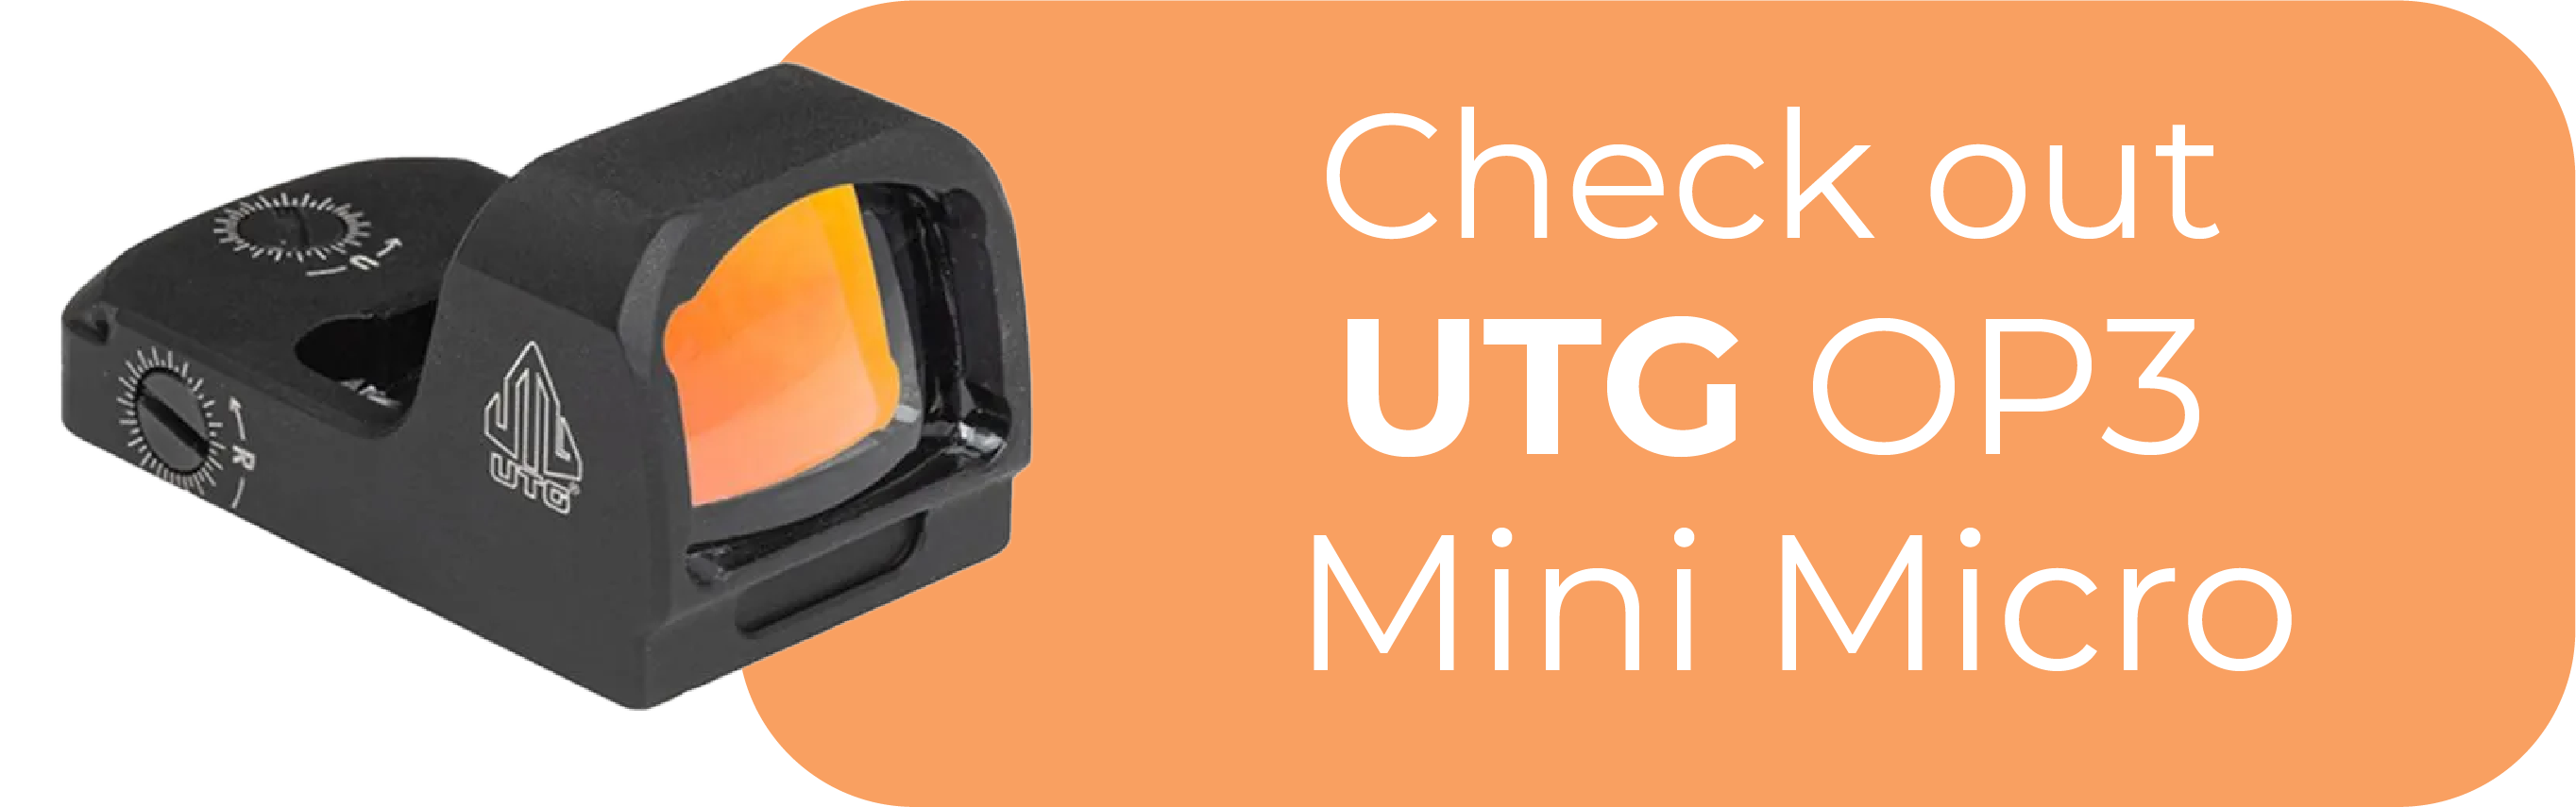 UTG OP3 Mini Micro Footprint